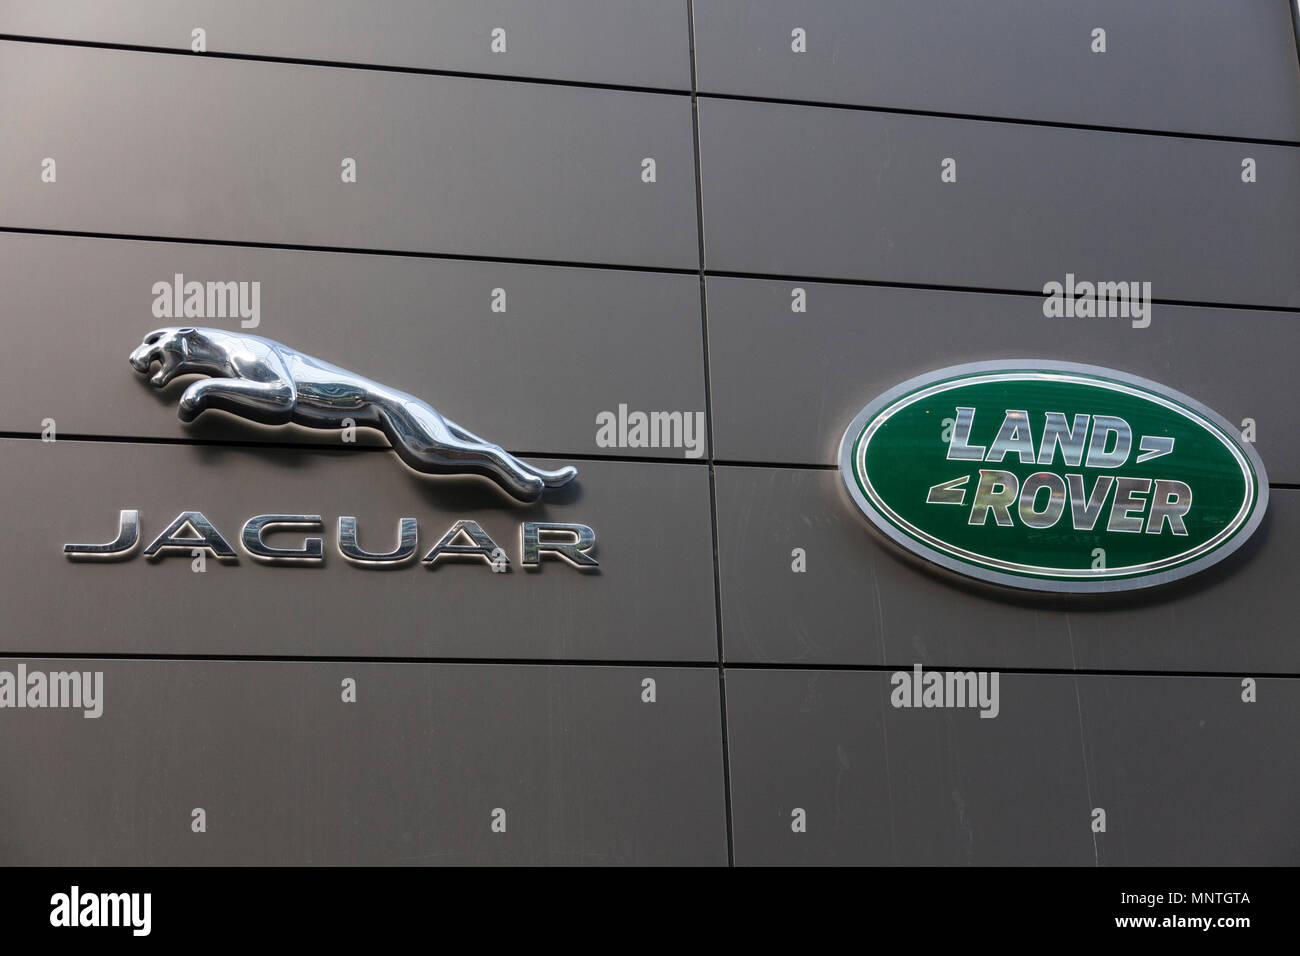 Jaguar Land Rover d'exposition à Westfield Stratford, à Londres Banque D'Images